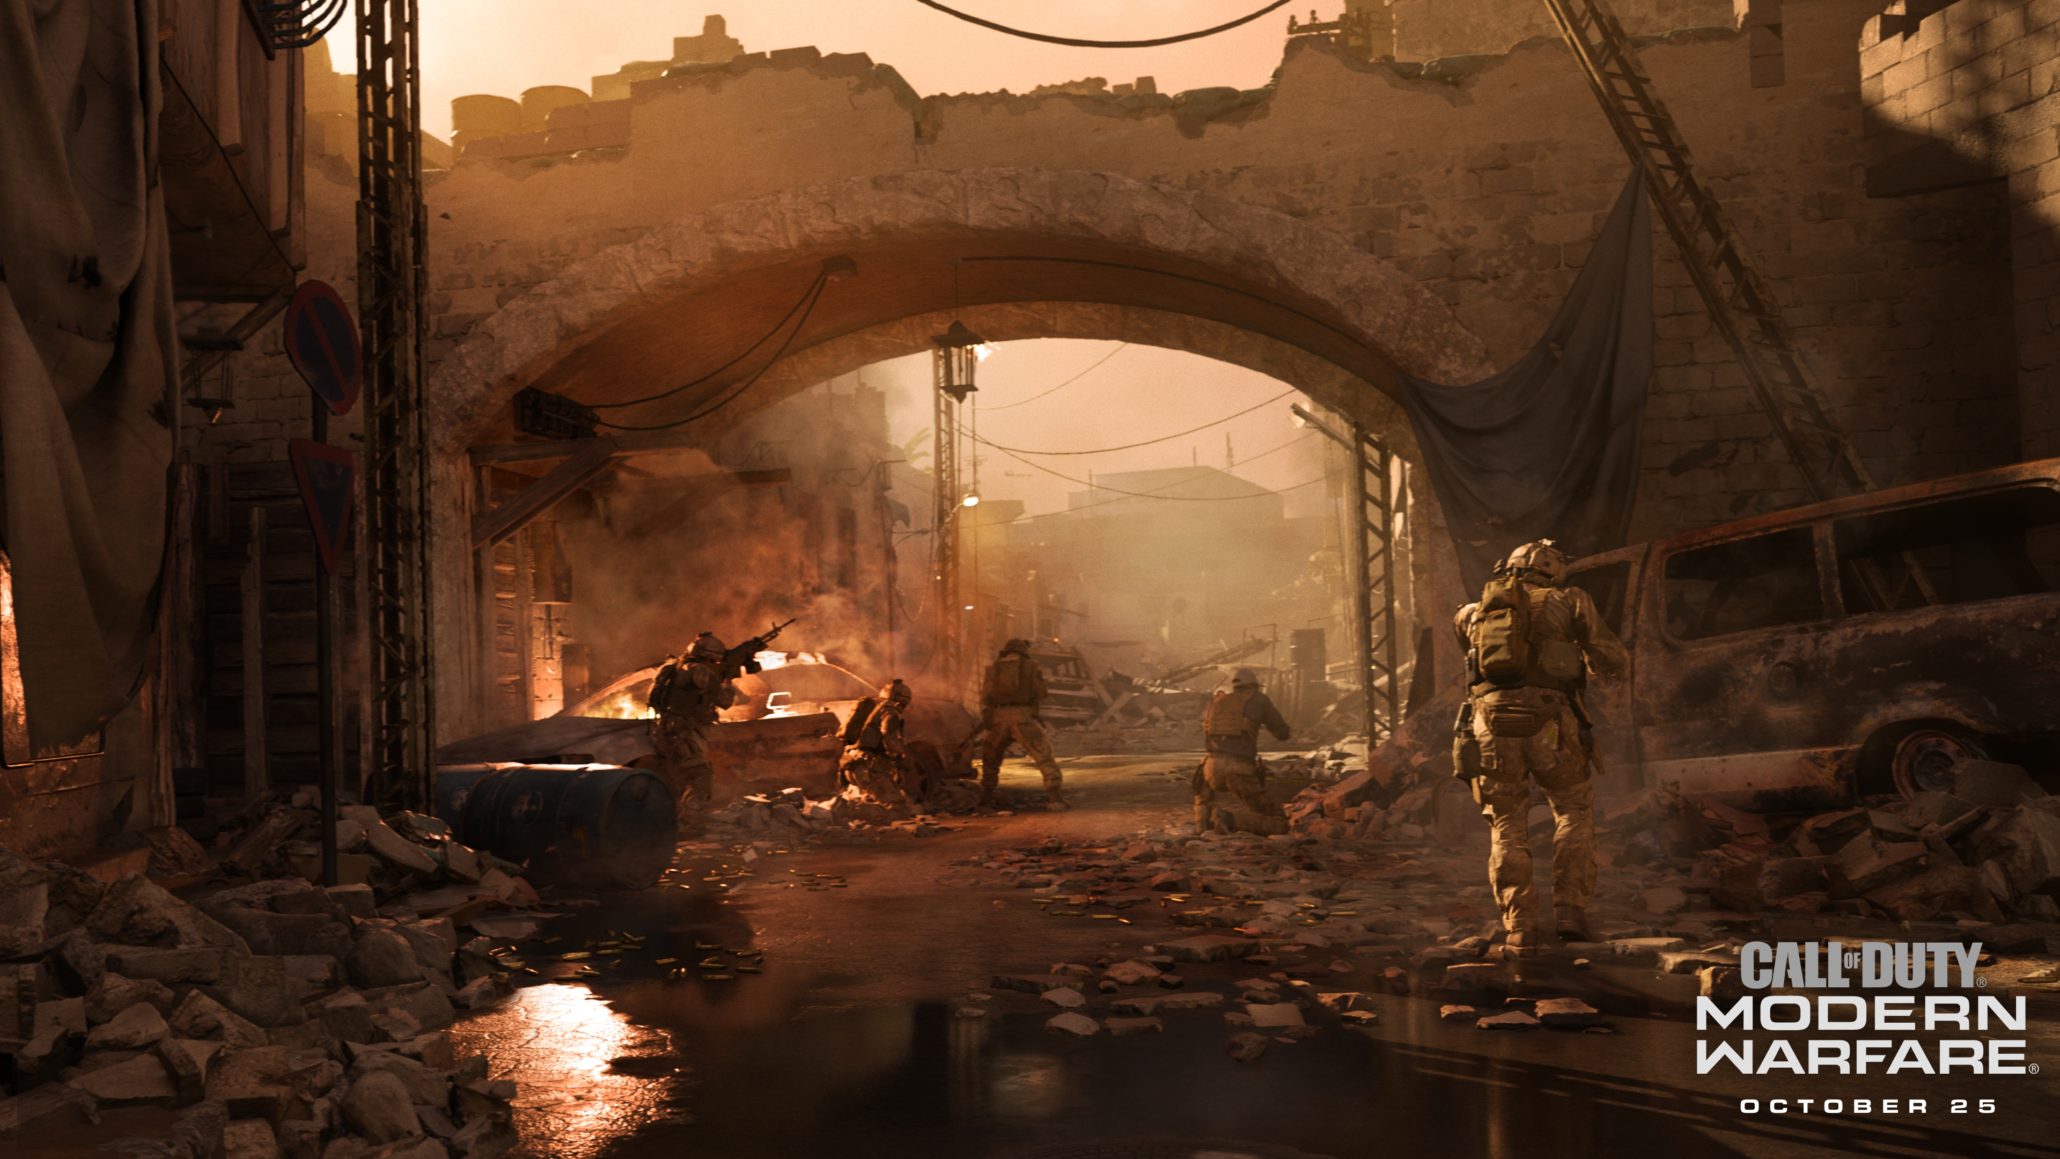 《任务吸唤16》的单人战争 将让玩家量疑本人的讲德